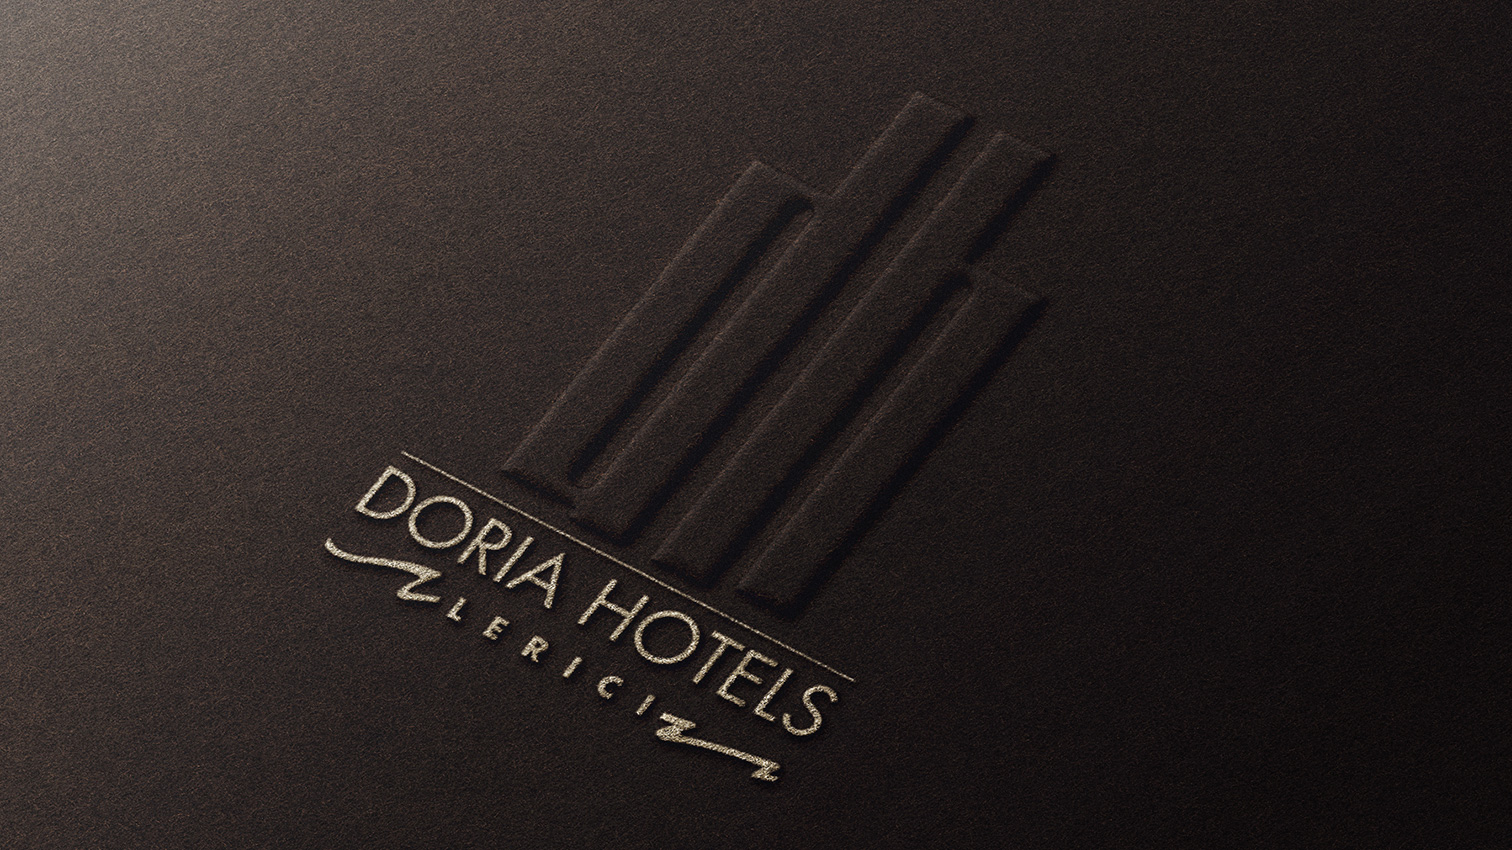 DORIA HOTELS